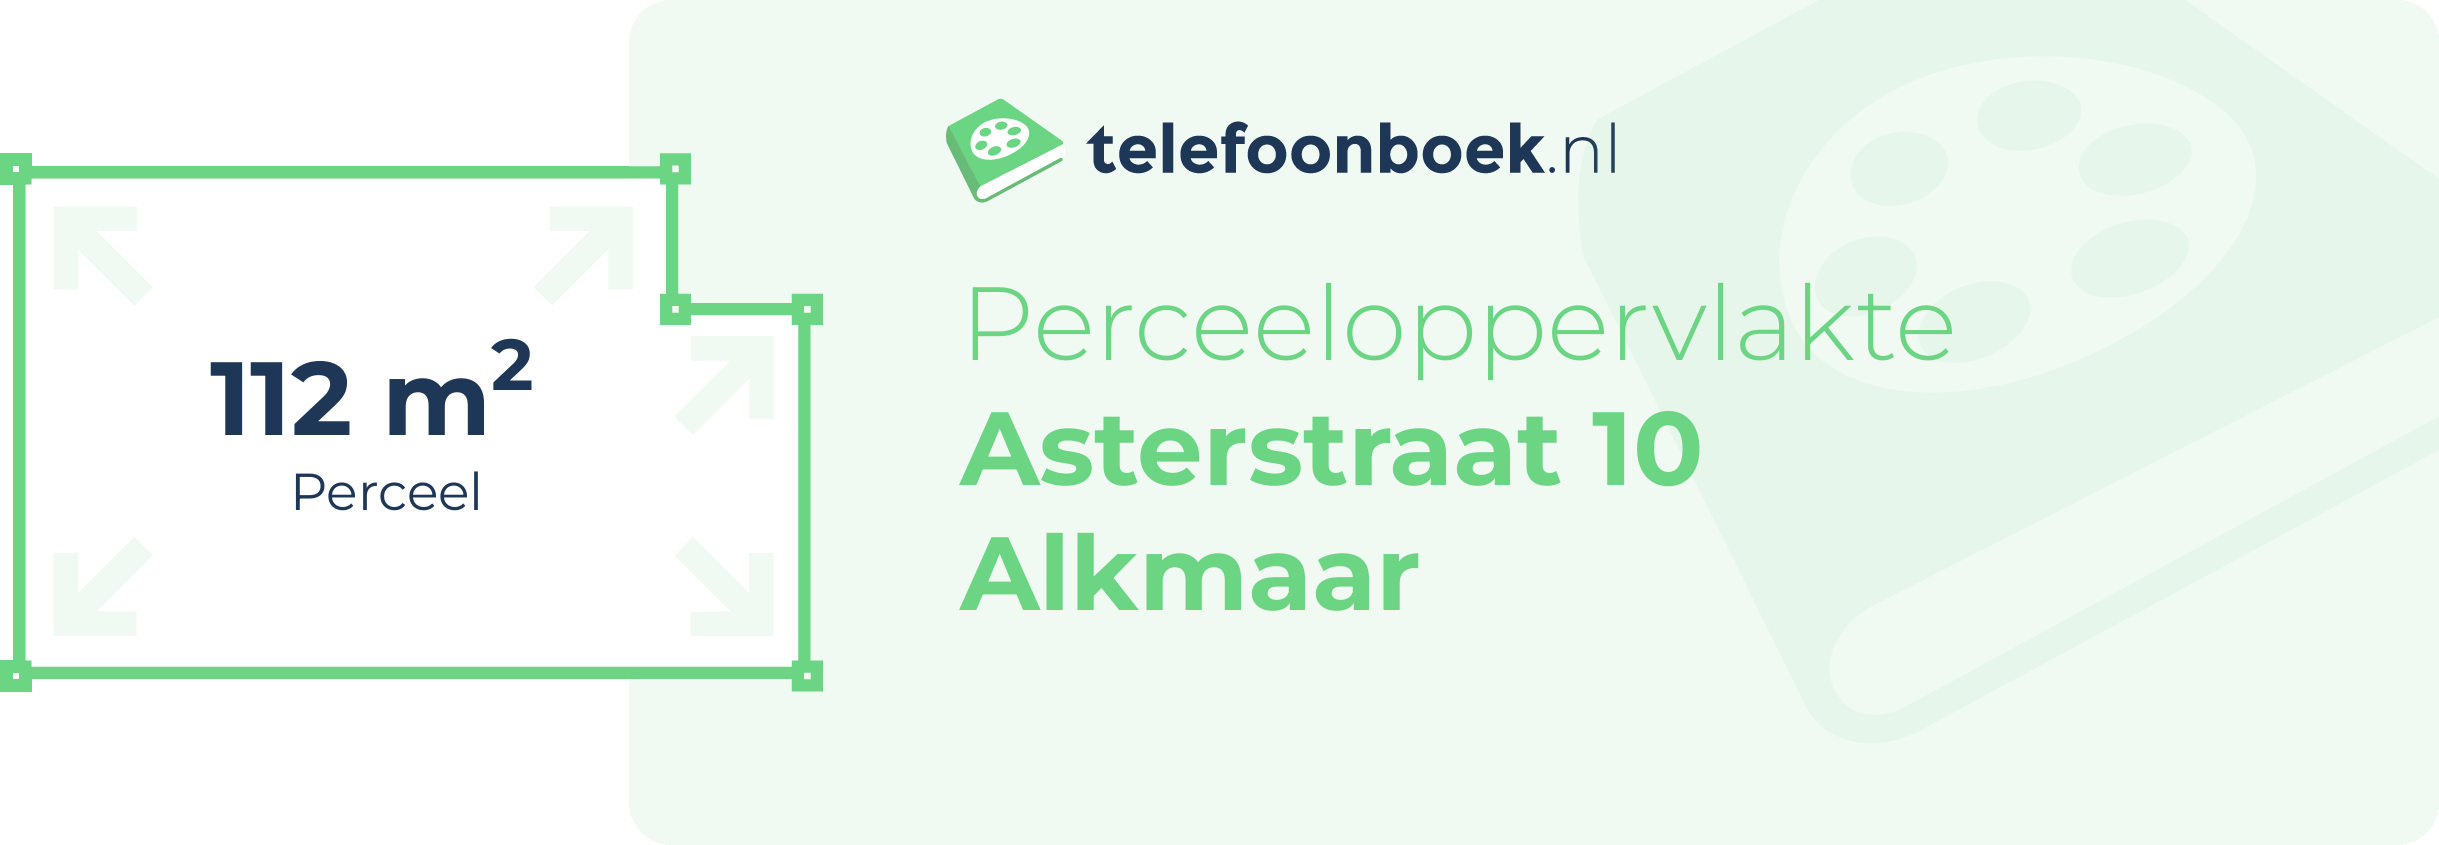 Perceeloppervlakte Asterstraat 10 Alkmaar